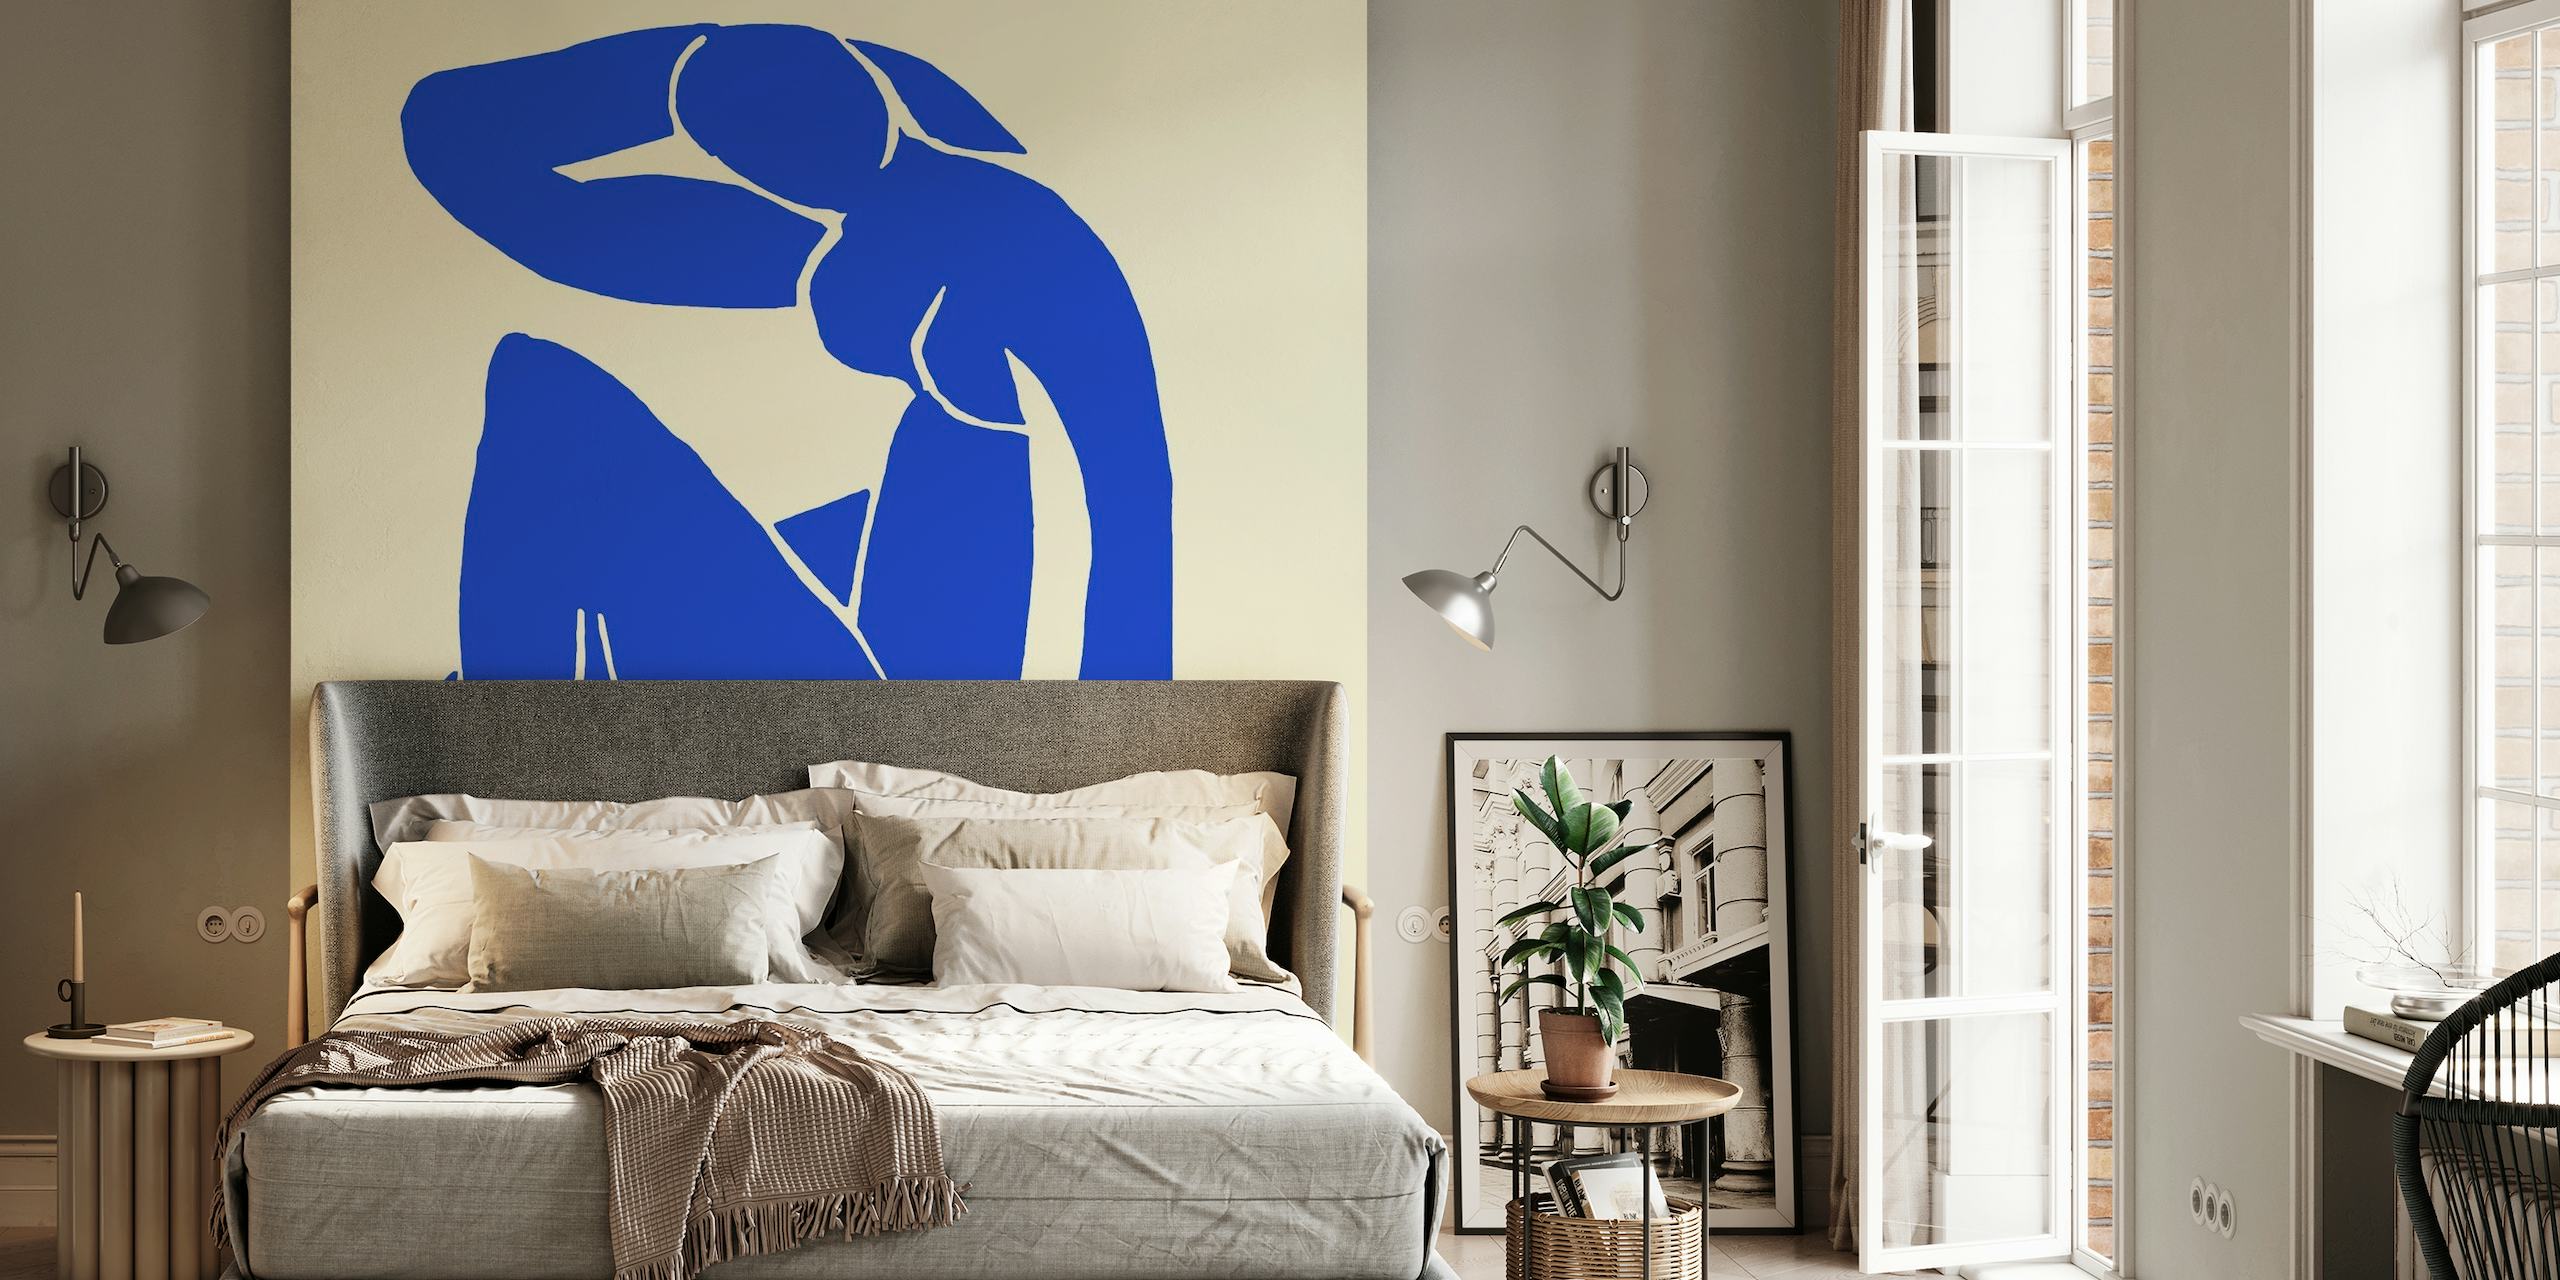 Abstract blauwe figuurmuurschildering geïnspireerd op de kunststijl van Matisse